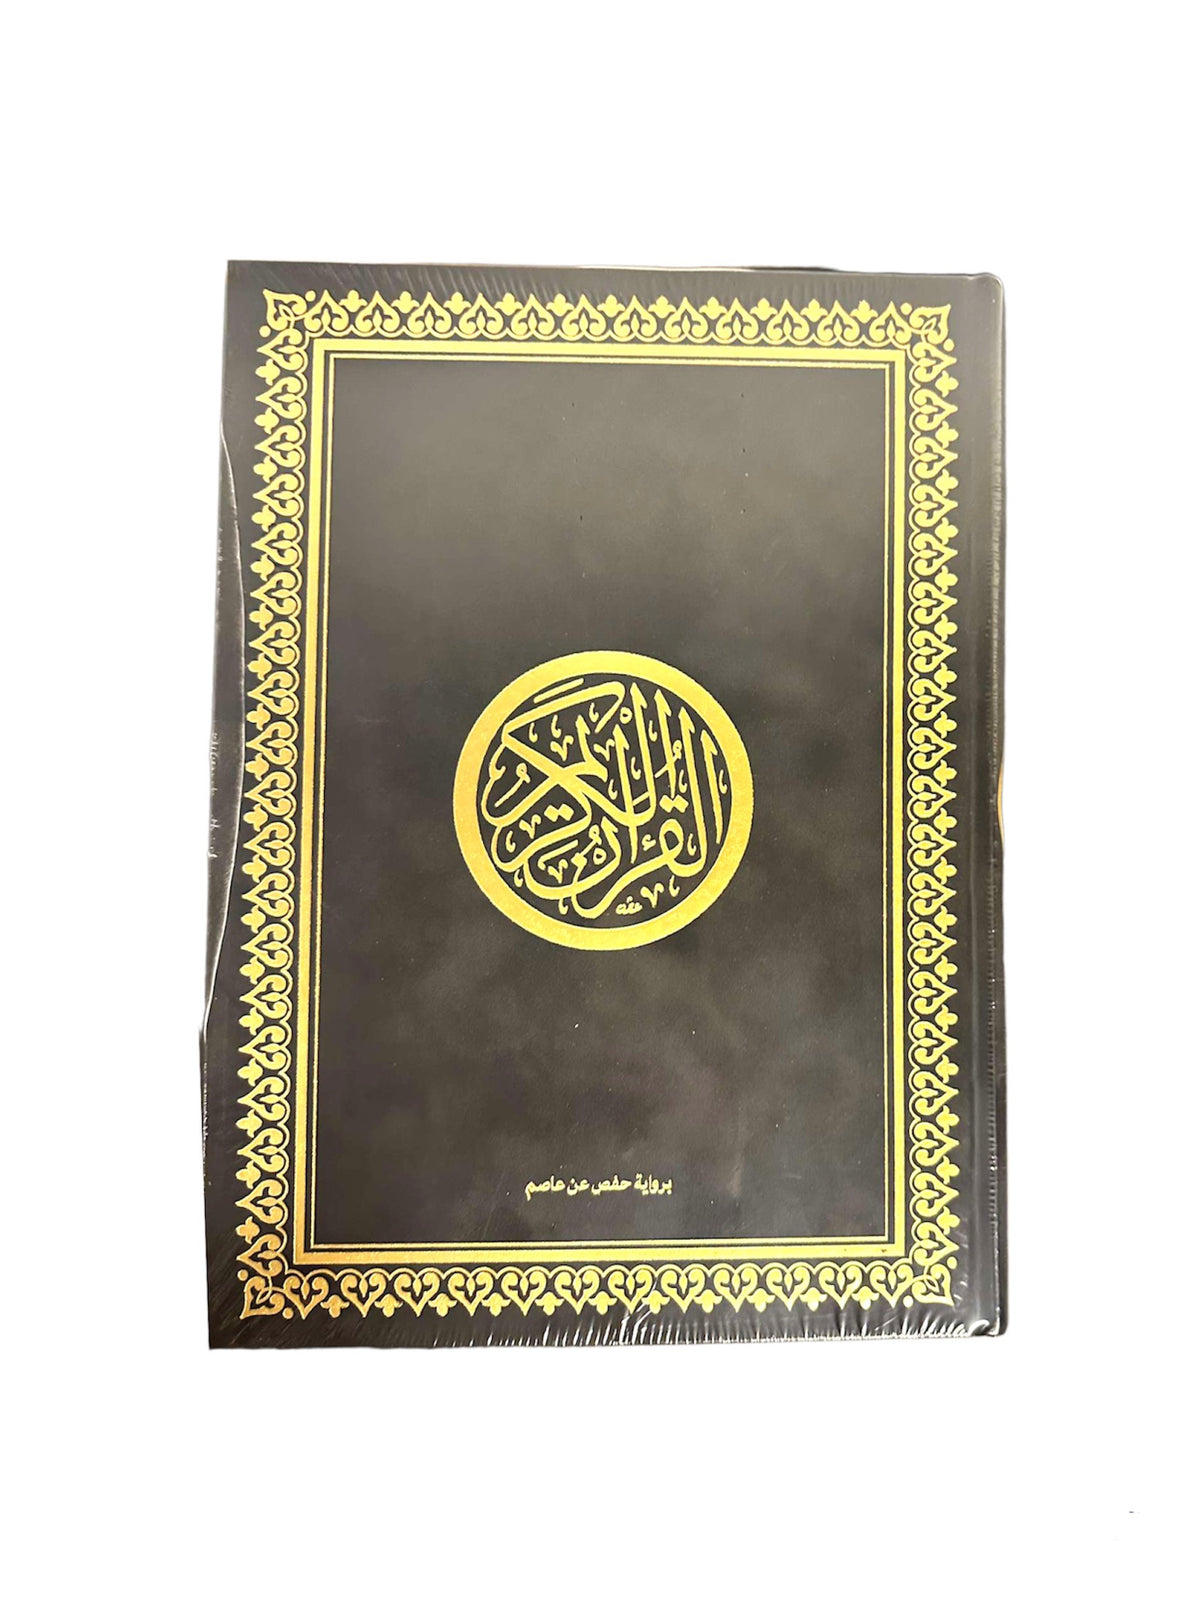 Koran med Ruskind omslag - XL